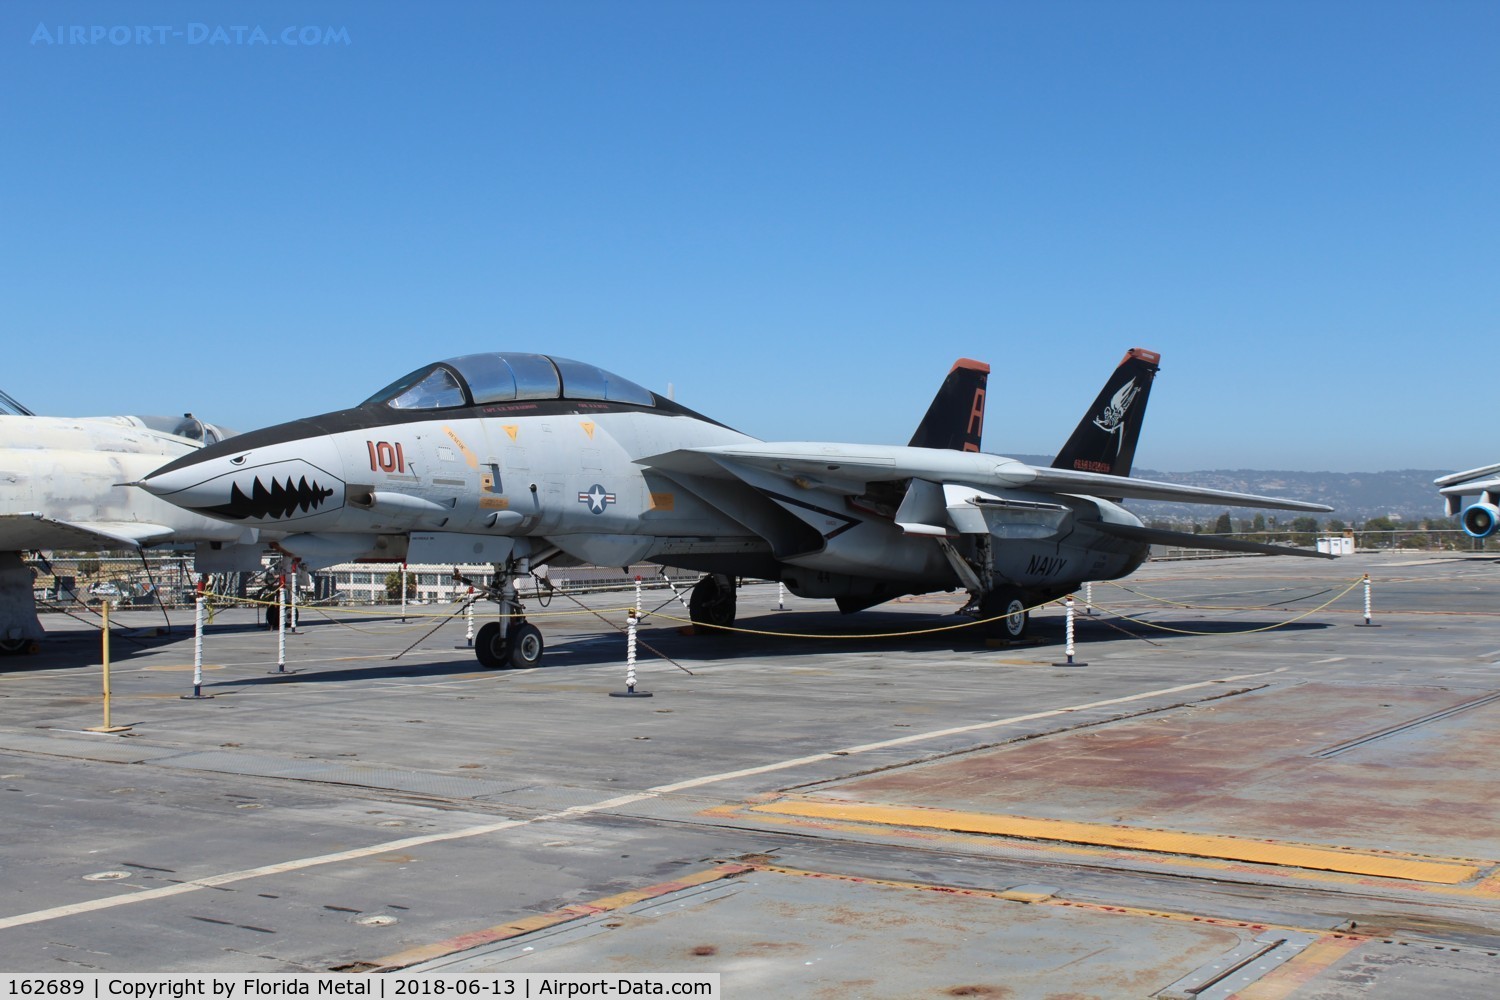 162689, Grumman F-14A Tomcat C/N 535, F-14 zx USS Hornet